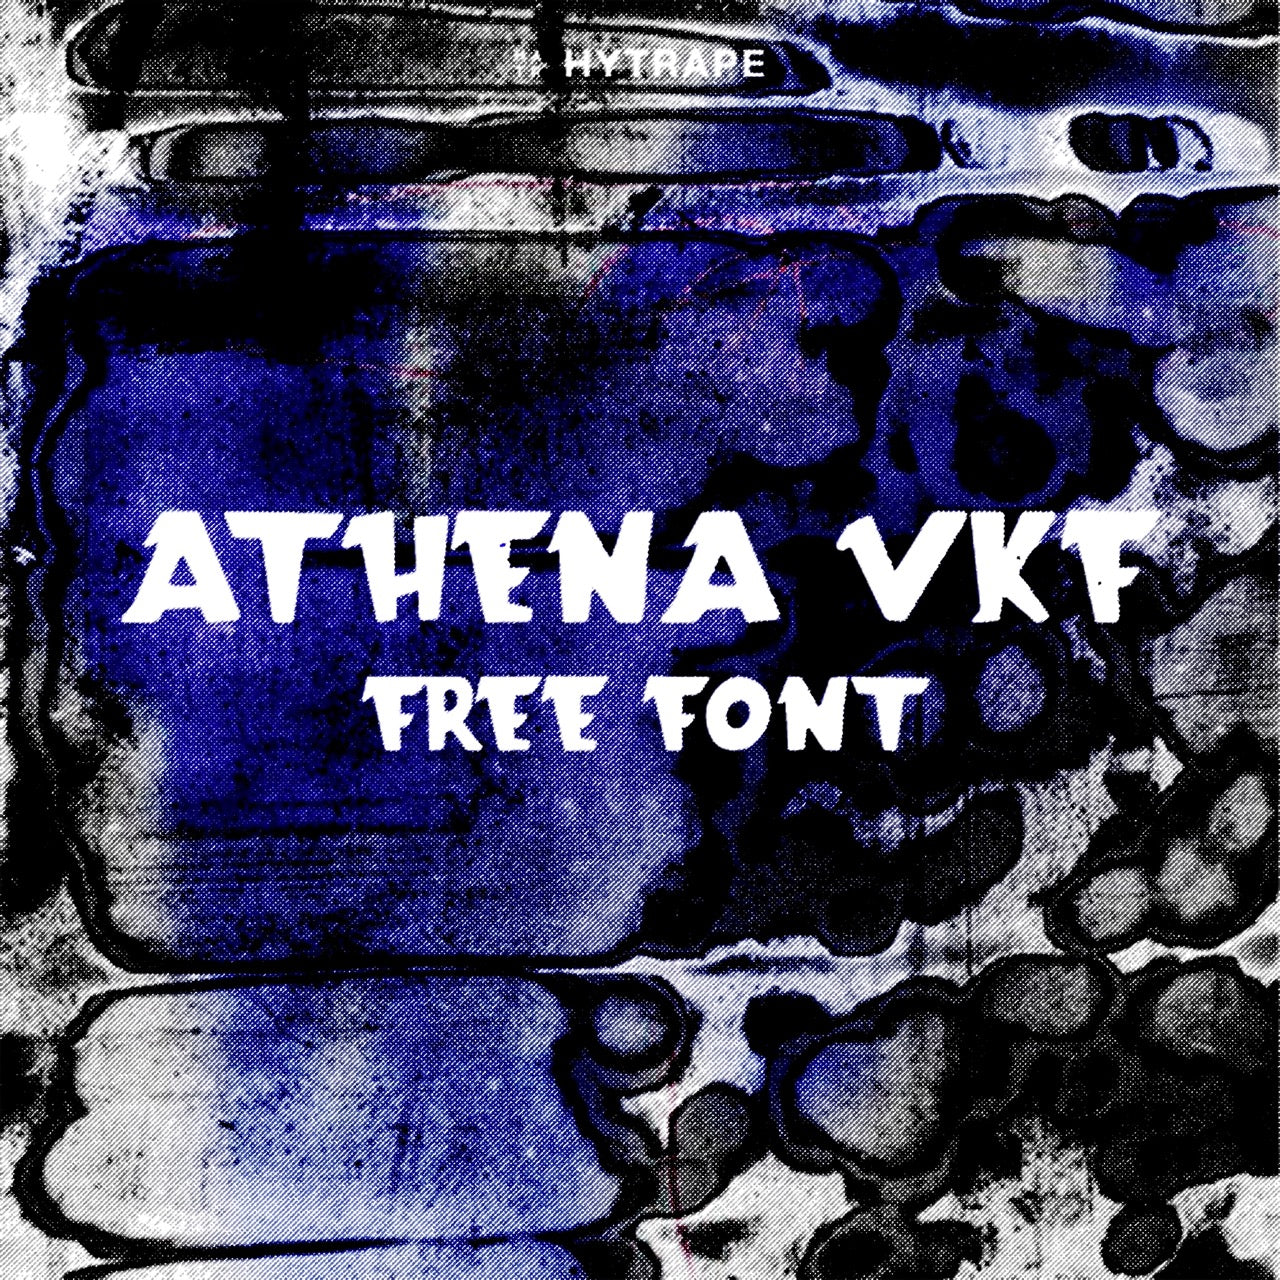 ATHENA FONT (FREE) HYTRAPE